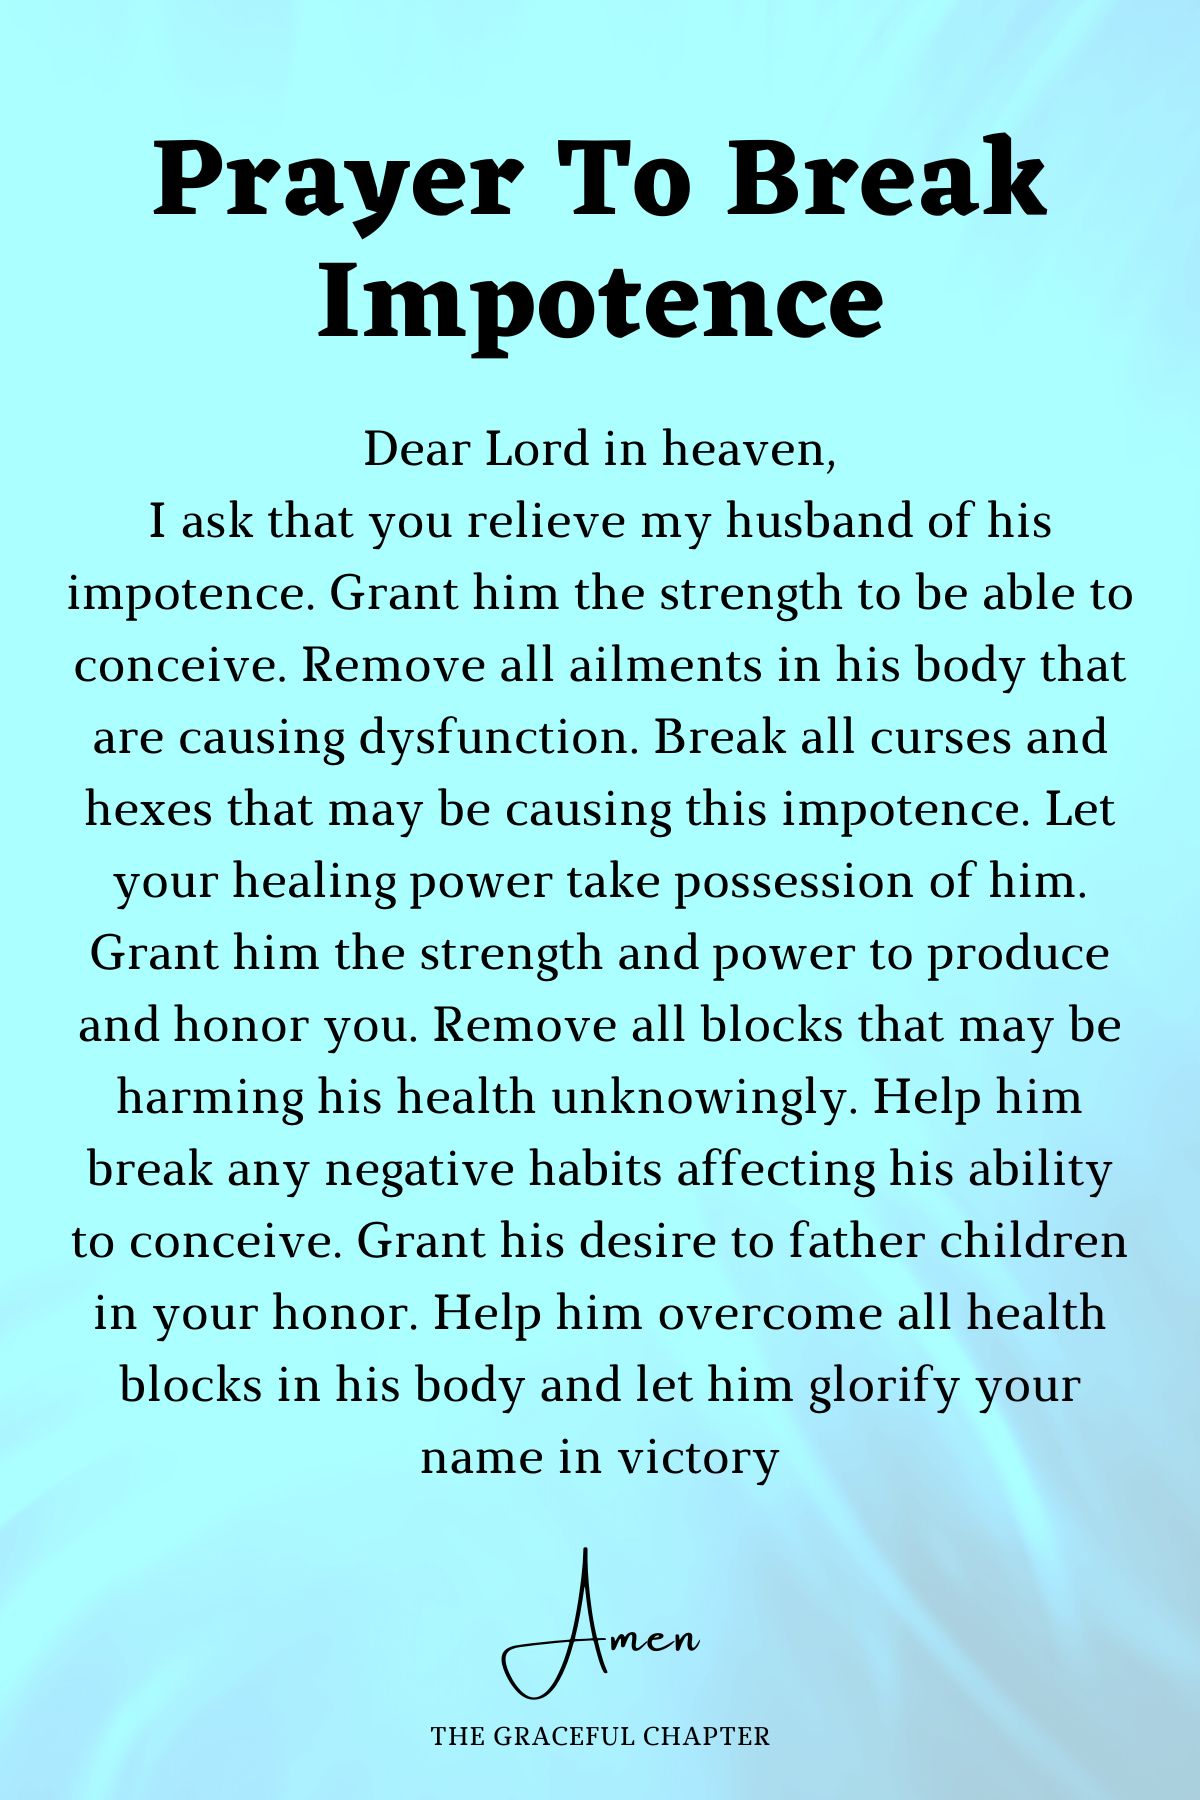 Prayer to break impotence